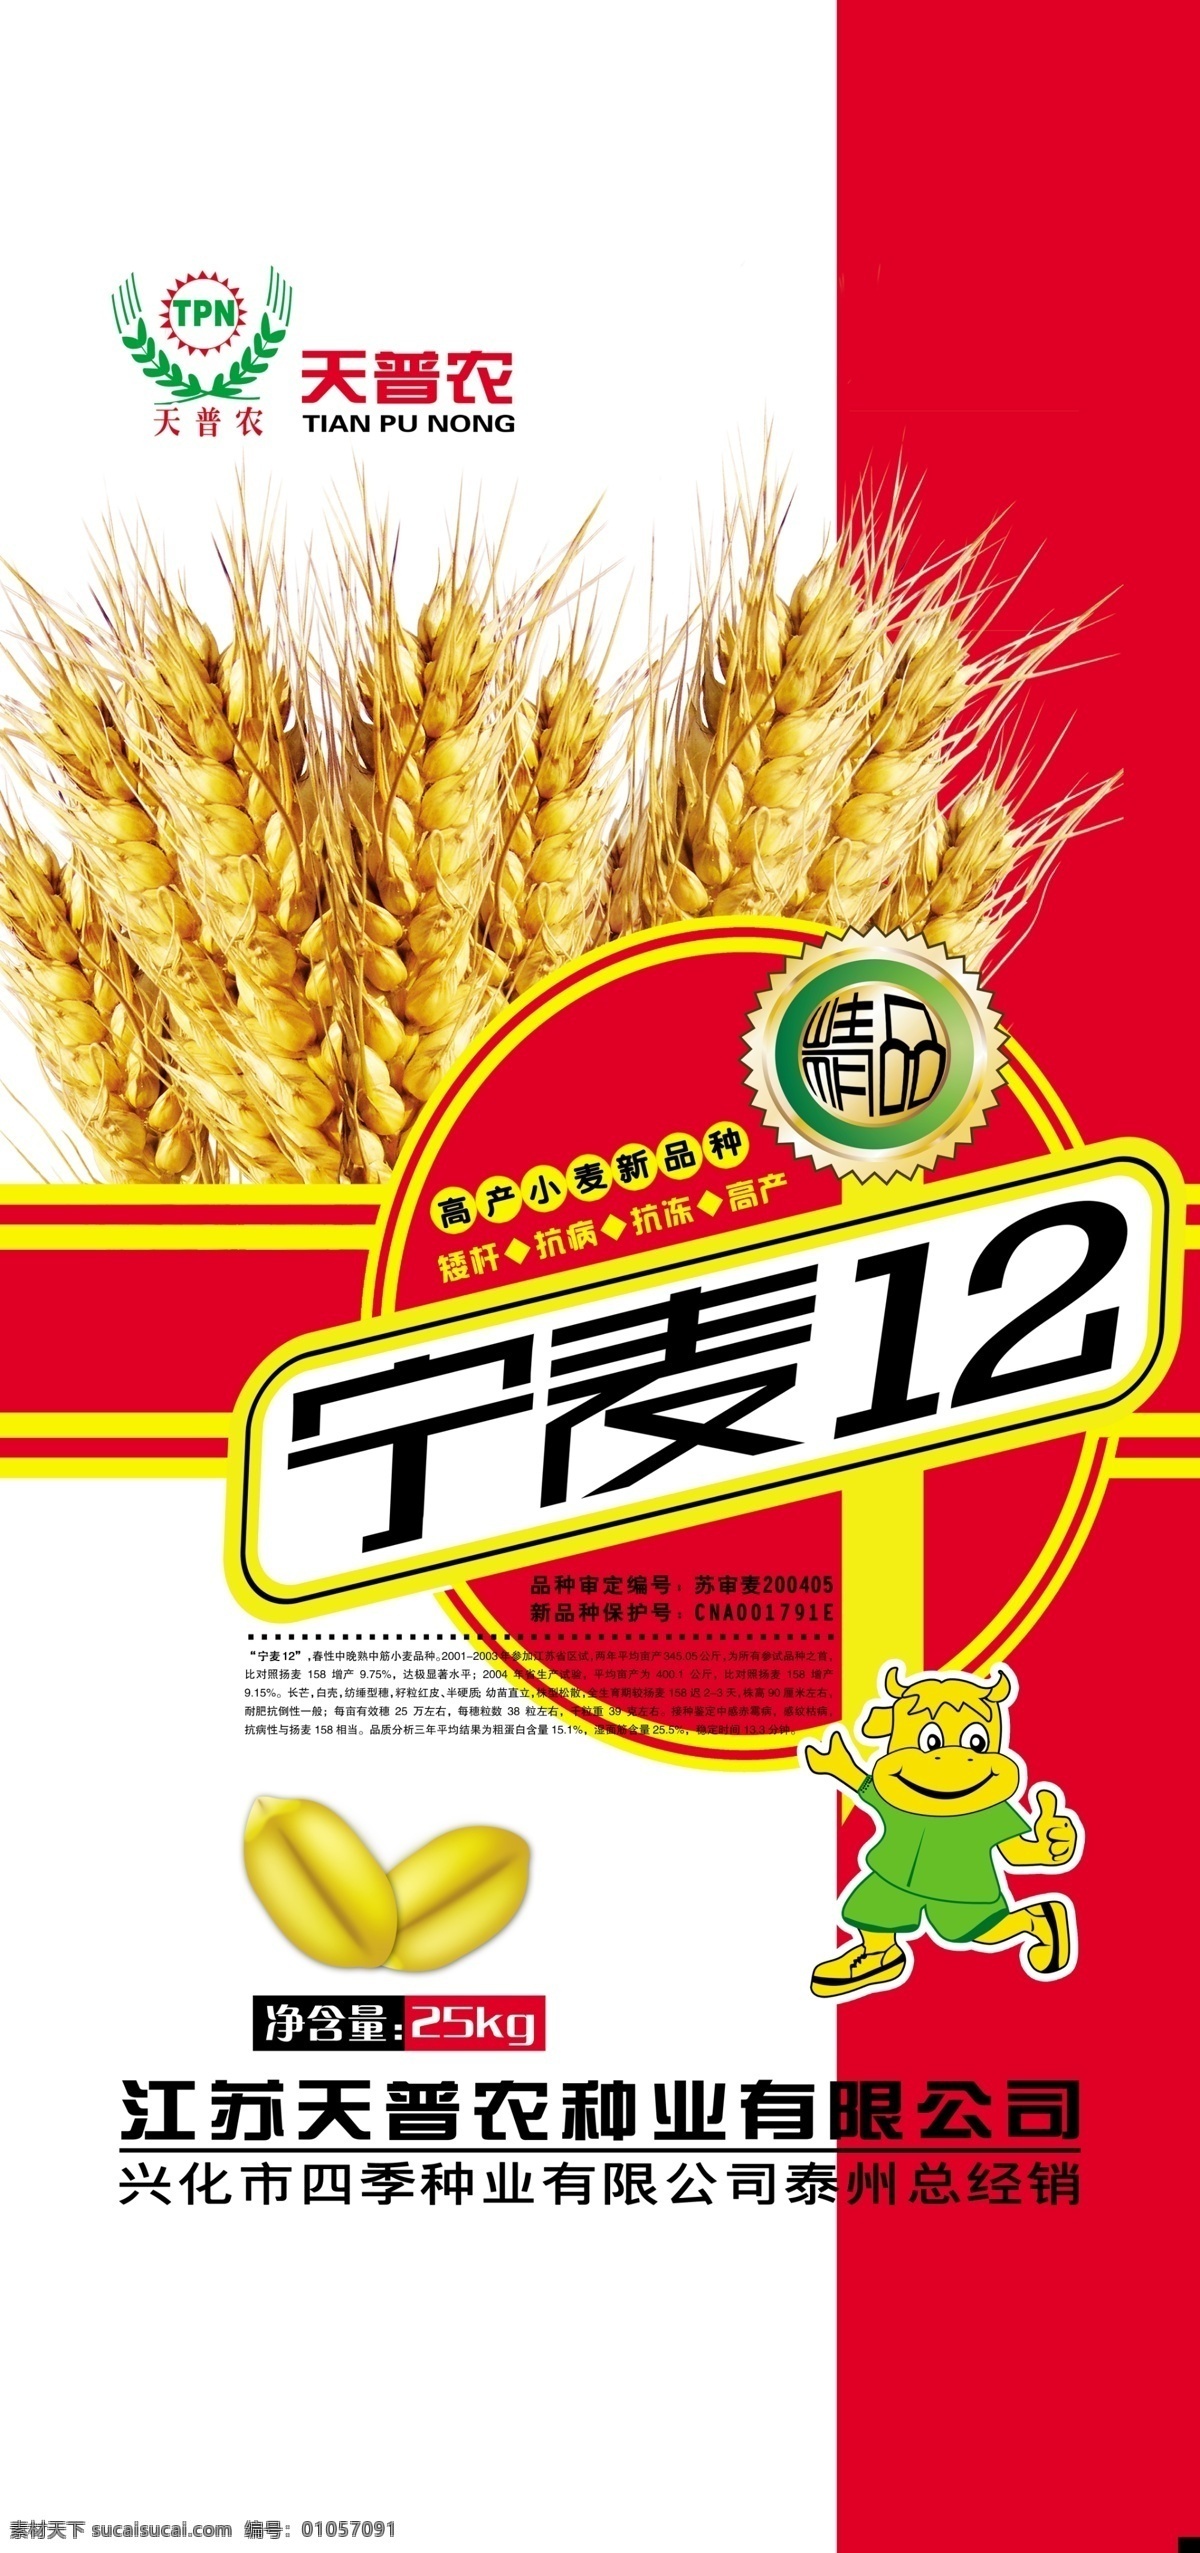 小麦 编织袋 包装 小麦包装 麦穗 麦粒 卡通 宁麦12 包装设计